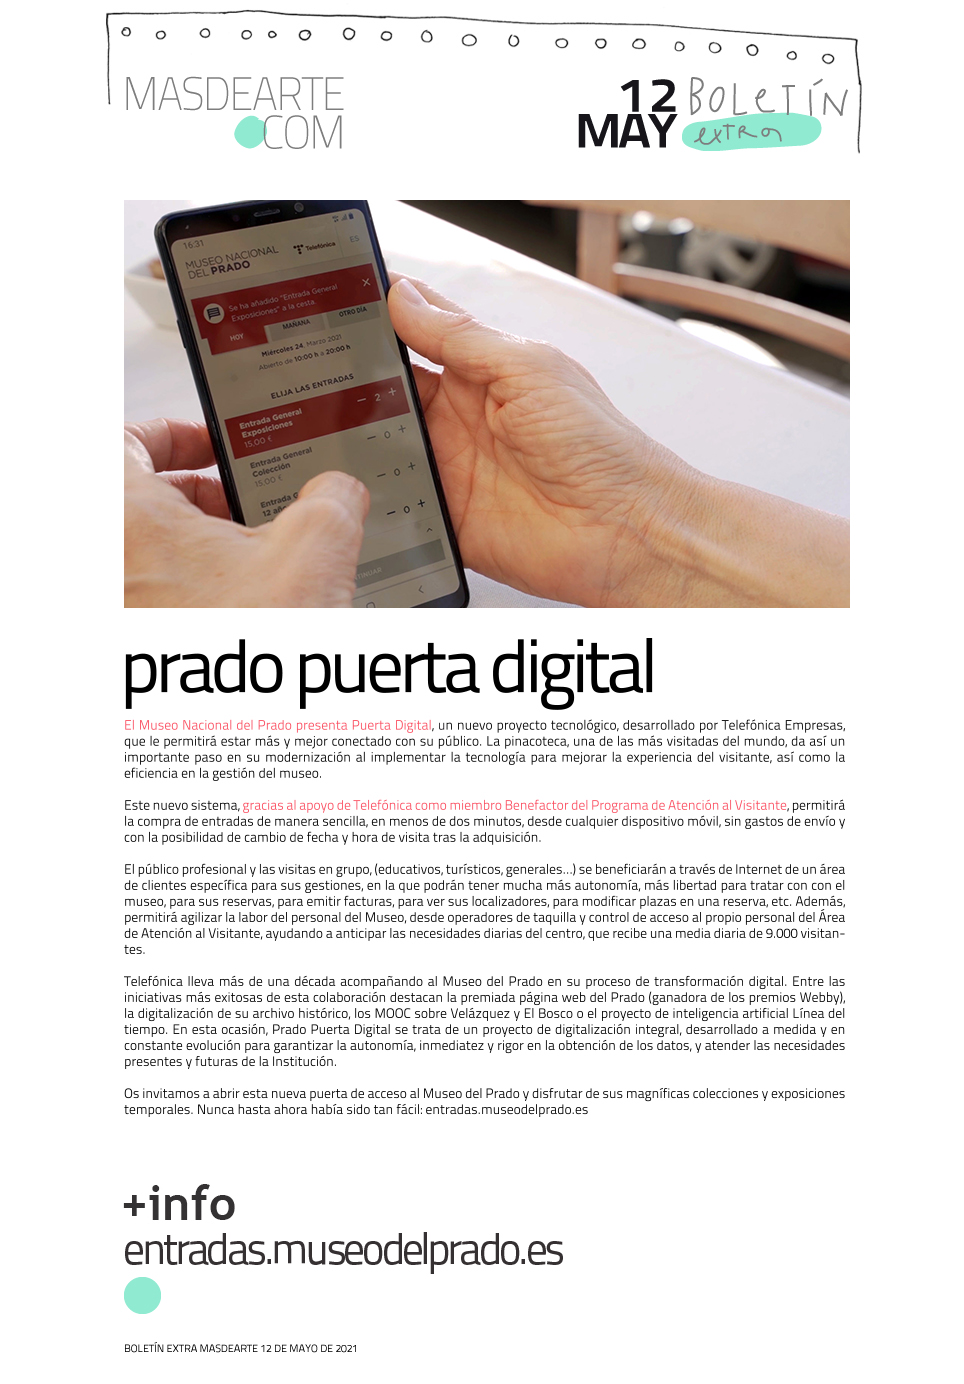 El Museo del Prado y Telefónica presentan Prado Puerta Digital